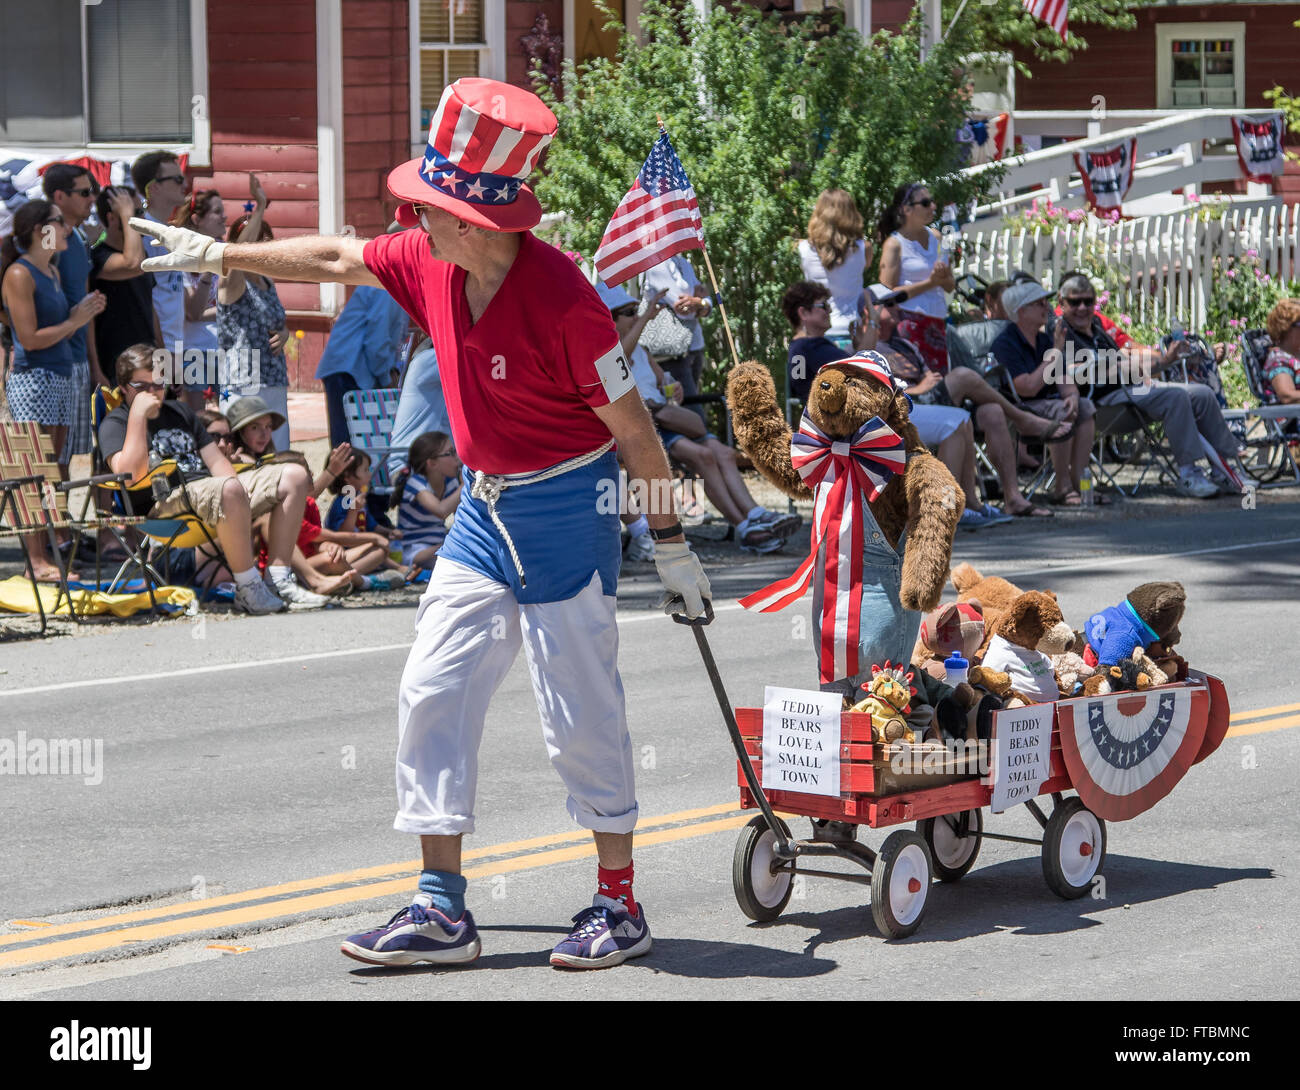 Un homme habillé en rouge, blanc et bleu tire une charrette pleine d'ours au cours d'une parade à la vallée de la Mohawk, jour de l'indépendance. Banque D'Images